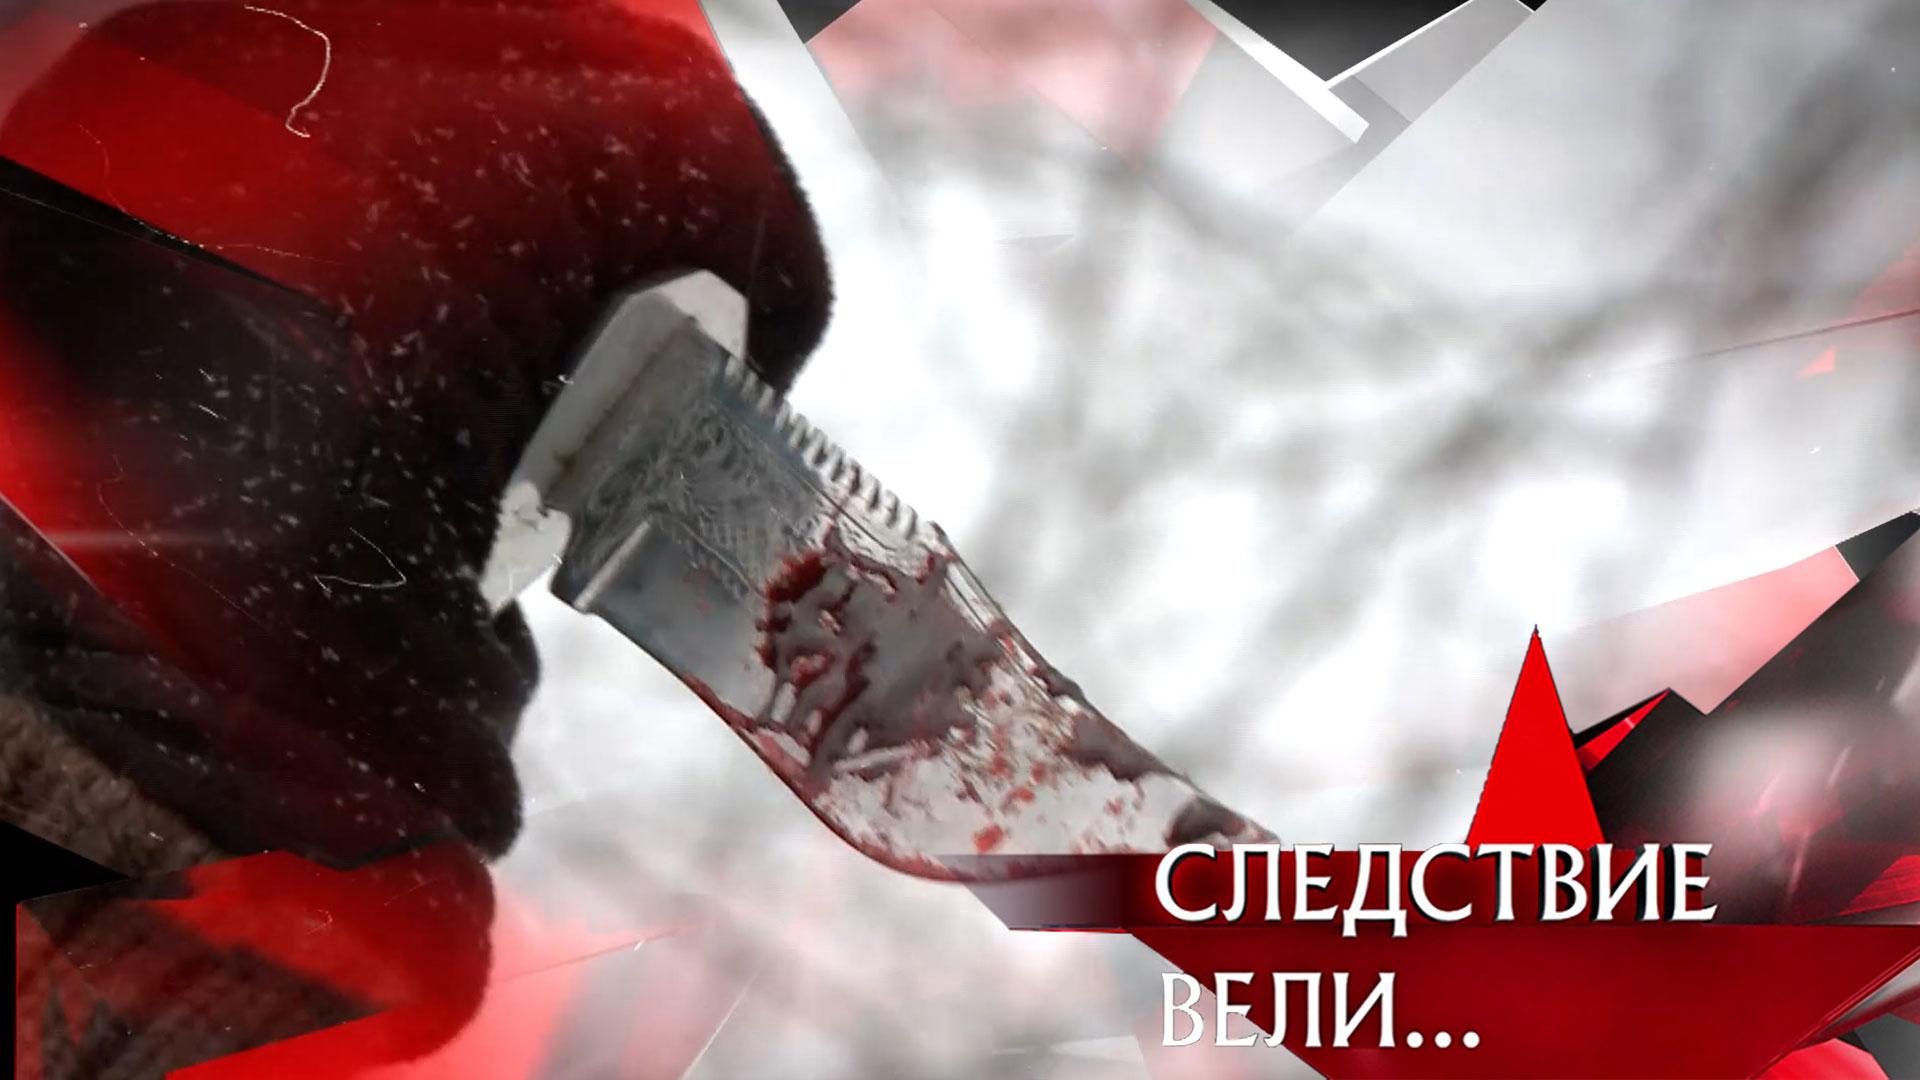 «Достать ножи» | Фильм из цикла «Следствие вели...» с Леонидом Каневским